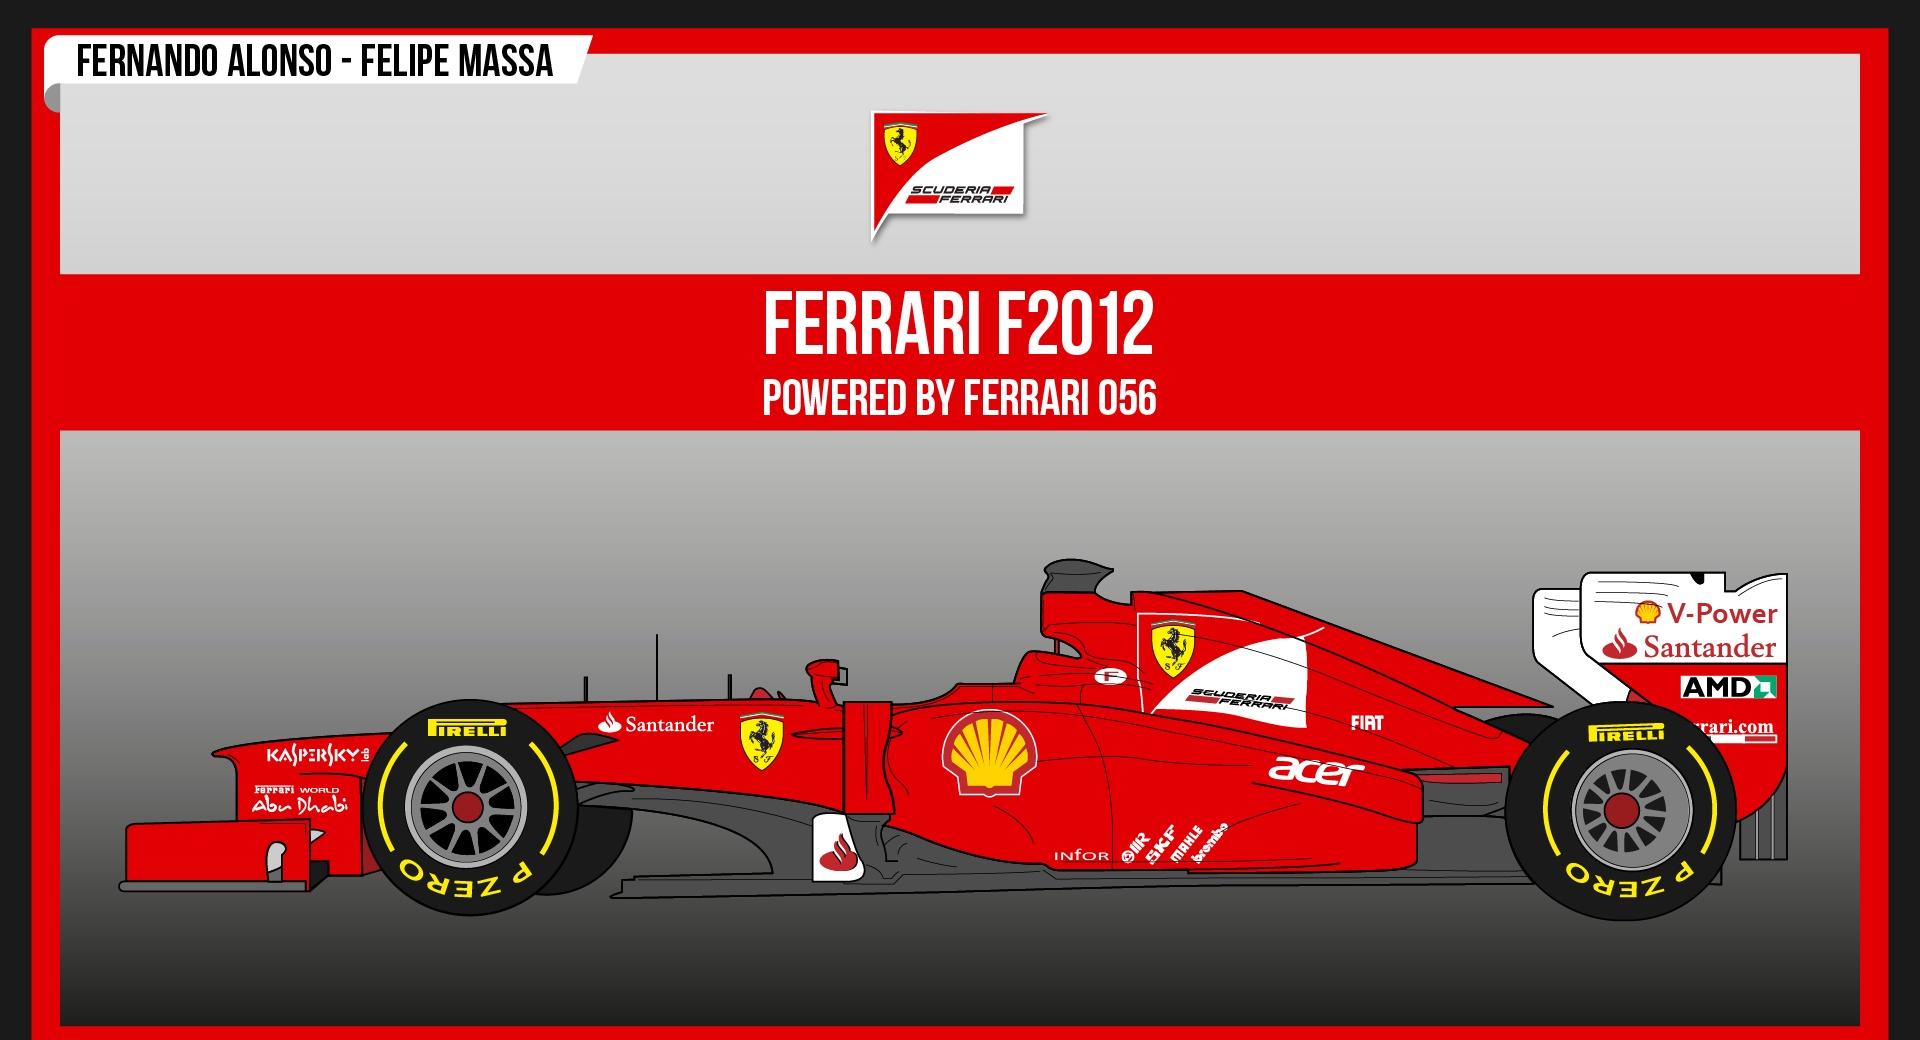 Ferrari F2012 at 1152 x 864 size wallpapers HD quality